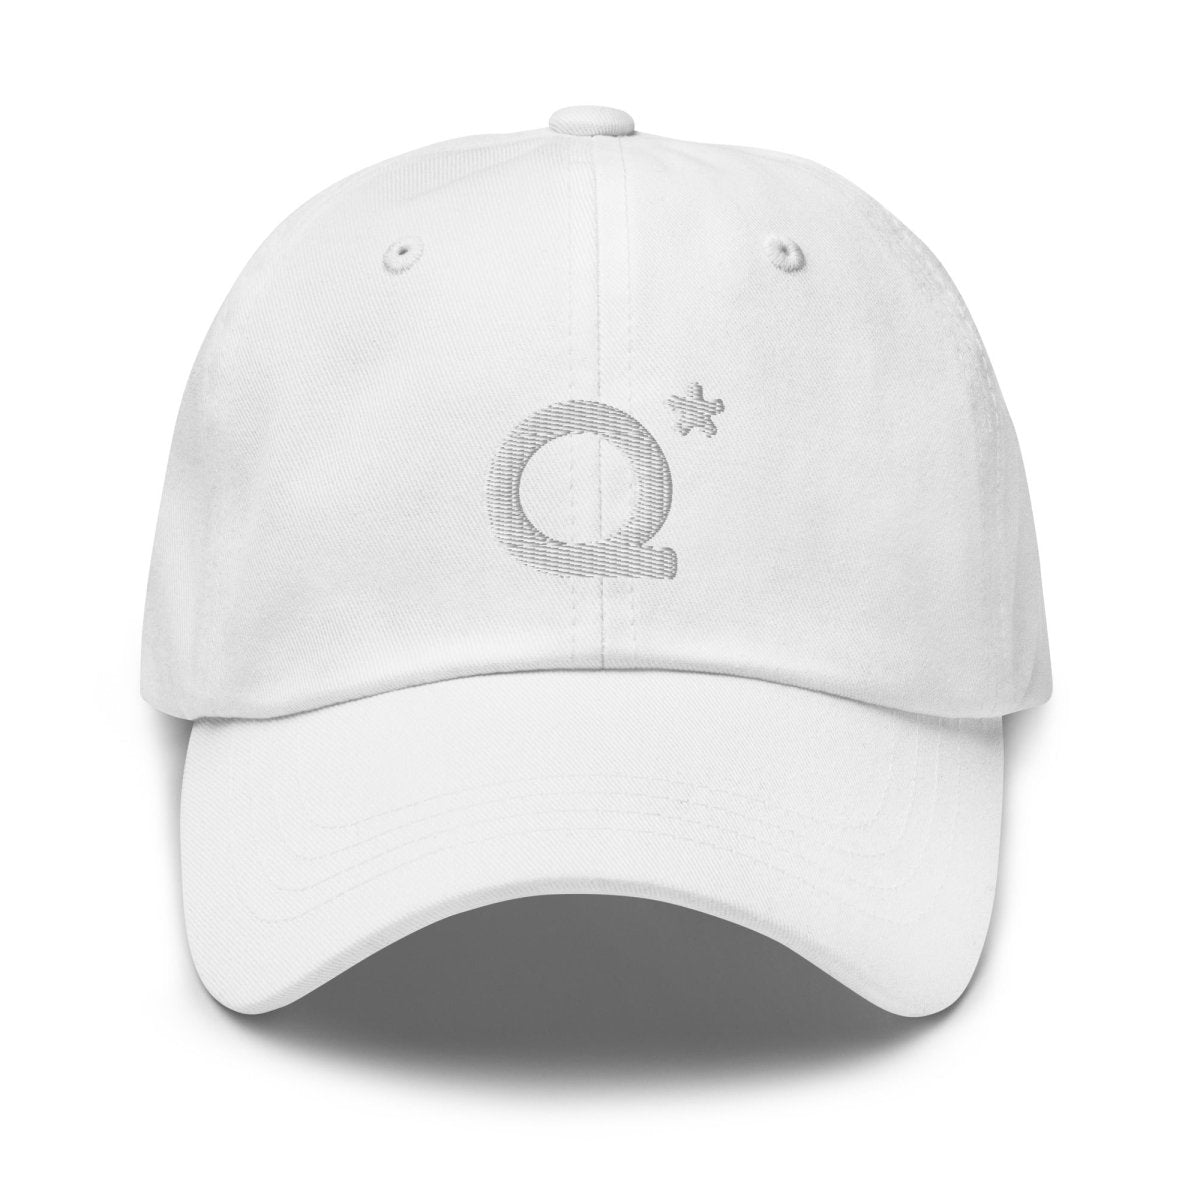 Q* (Q - Star) Embroidered Cap 1 - White - AI Store